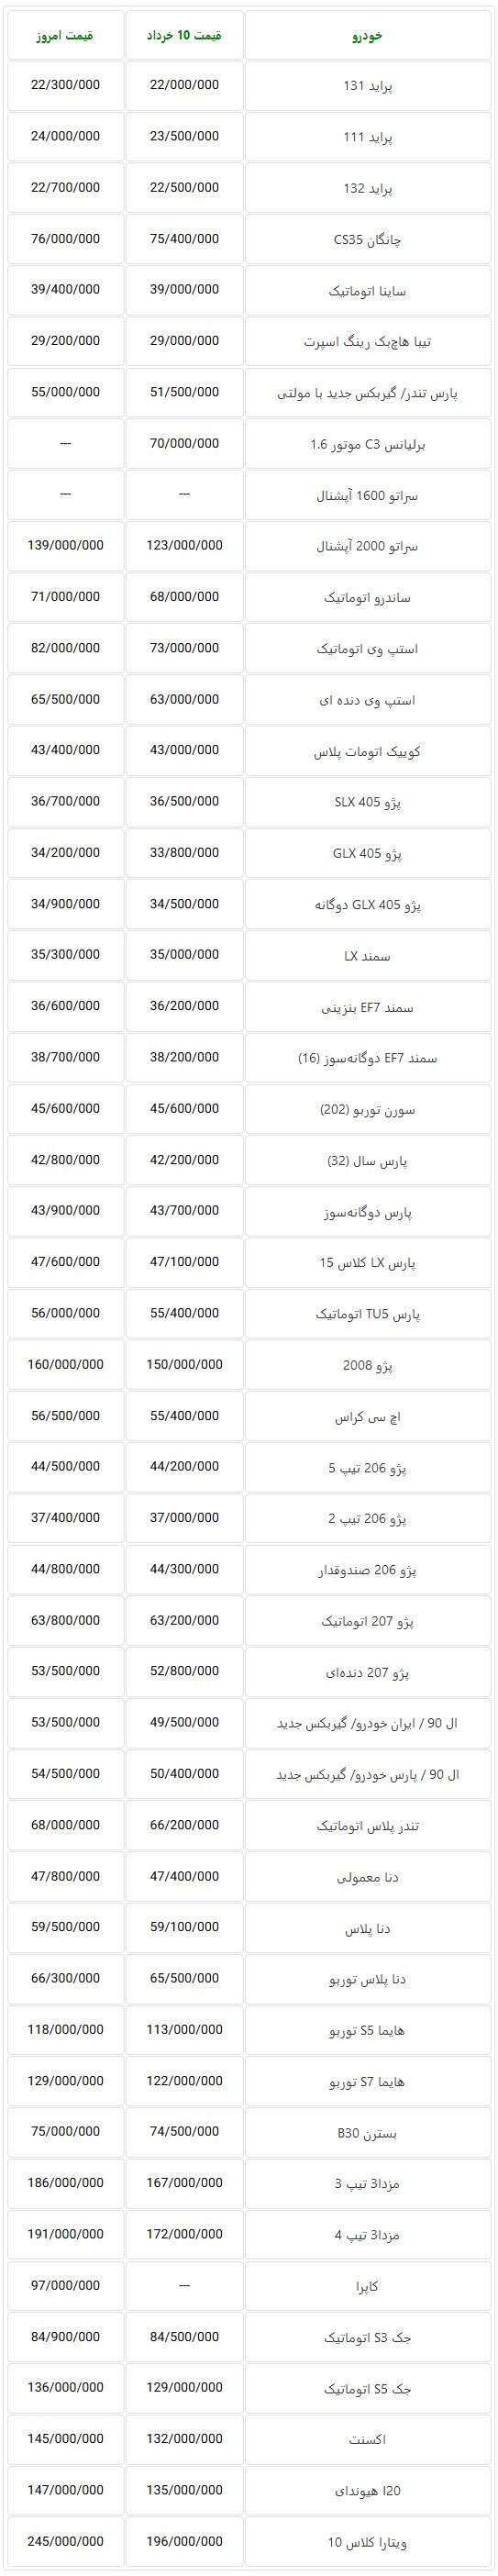  جدول قیمت روز خودروهای تولید داخل در بازار تهران – 19 خرداد 